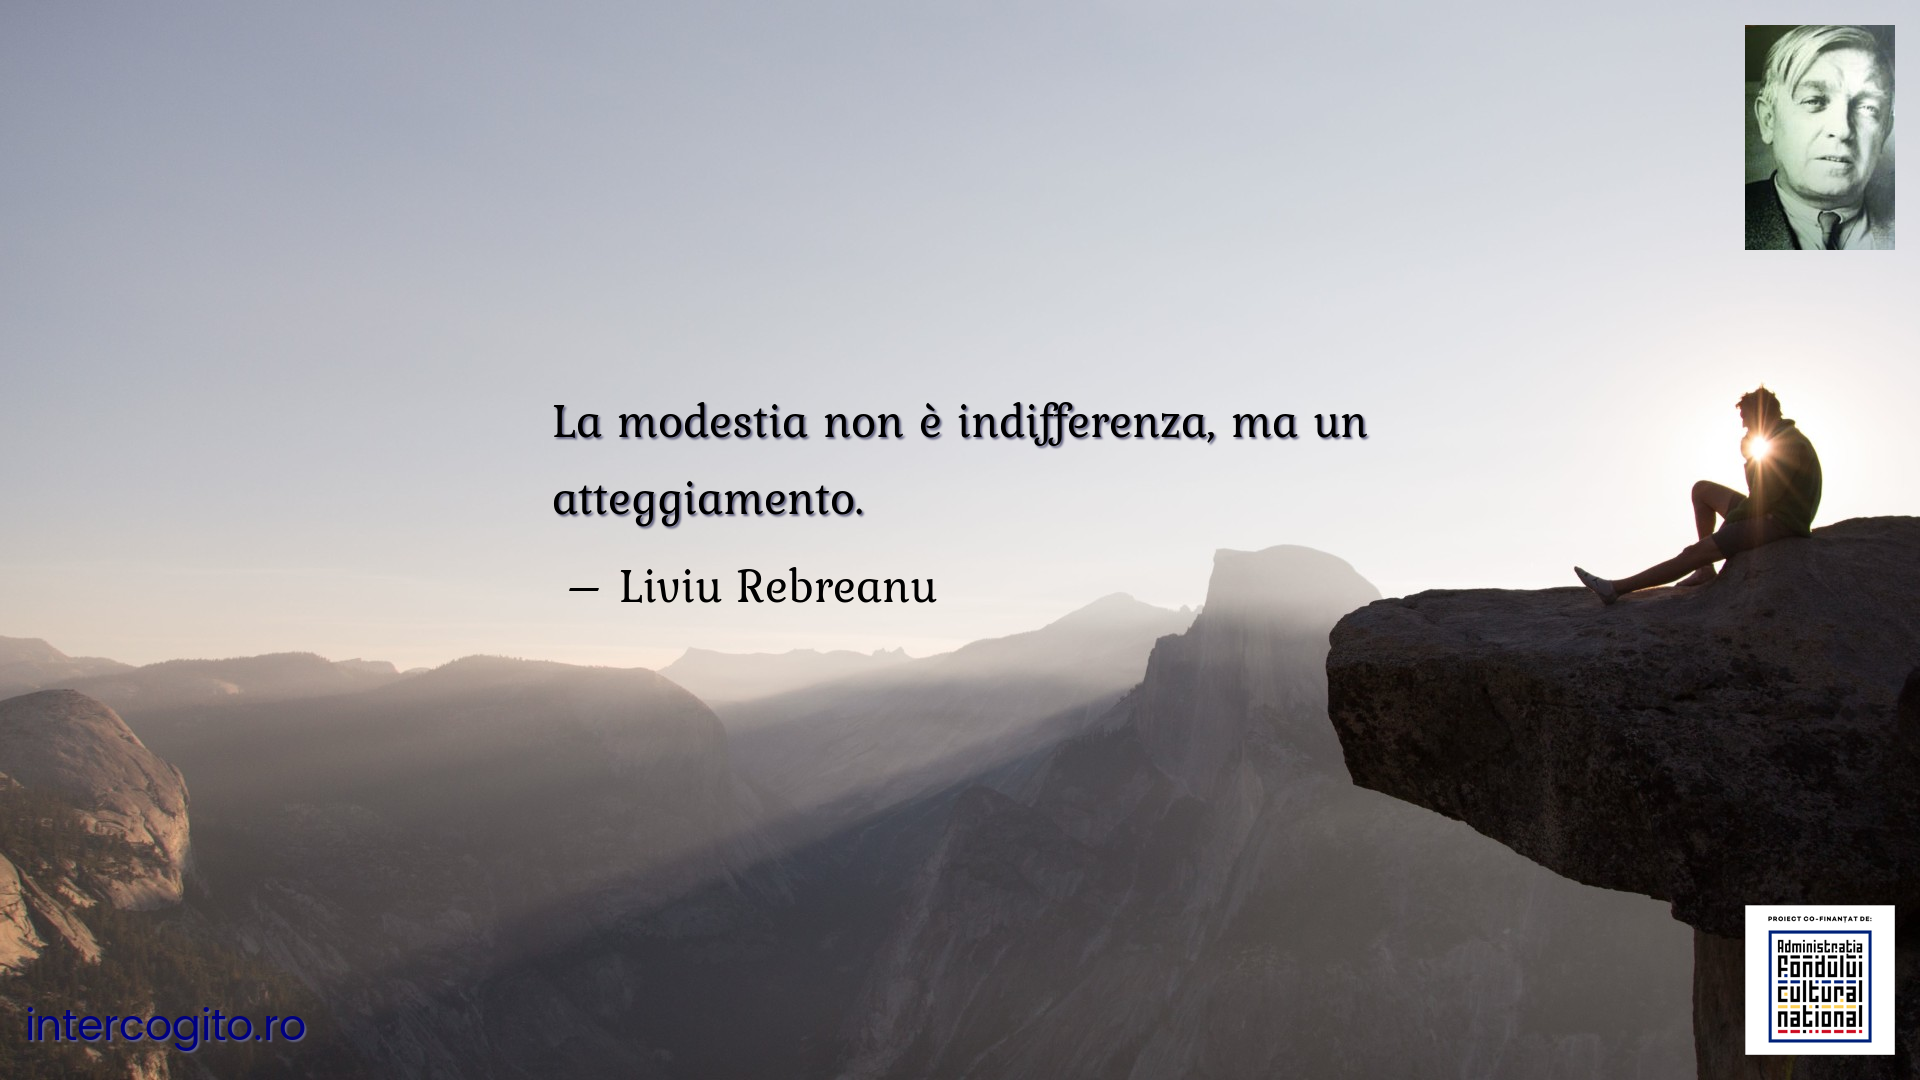 La modestia non è indifferenza, ma un atteggiamento.